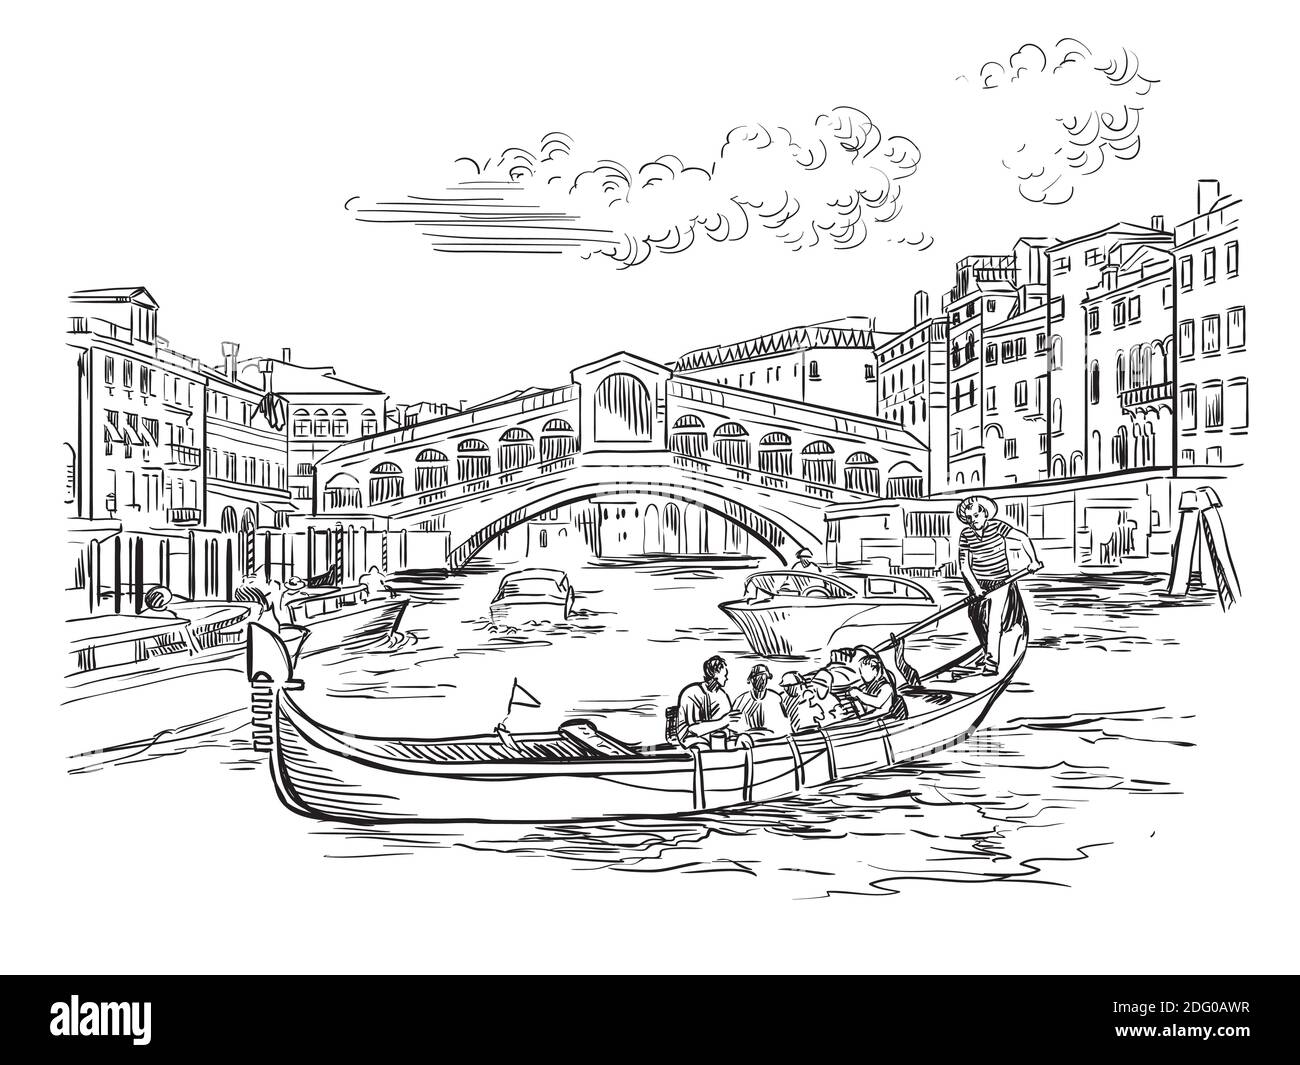 Vektor-Handzeichnung Skizze Illustration der Rialtobrücke auf dem Canal Grande in Venedig. Skyline von Venedig handgezeichnete Skizze in schwarzer Farbe isoliert auf weißem b Stock Vektor